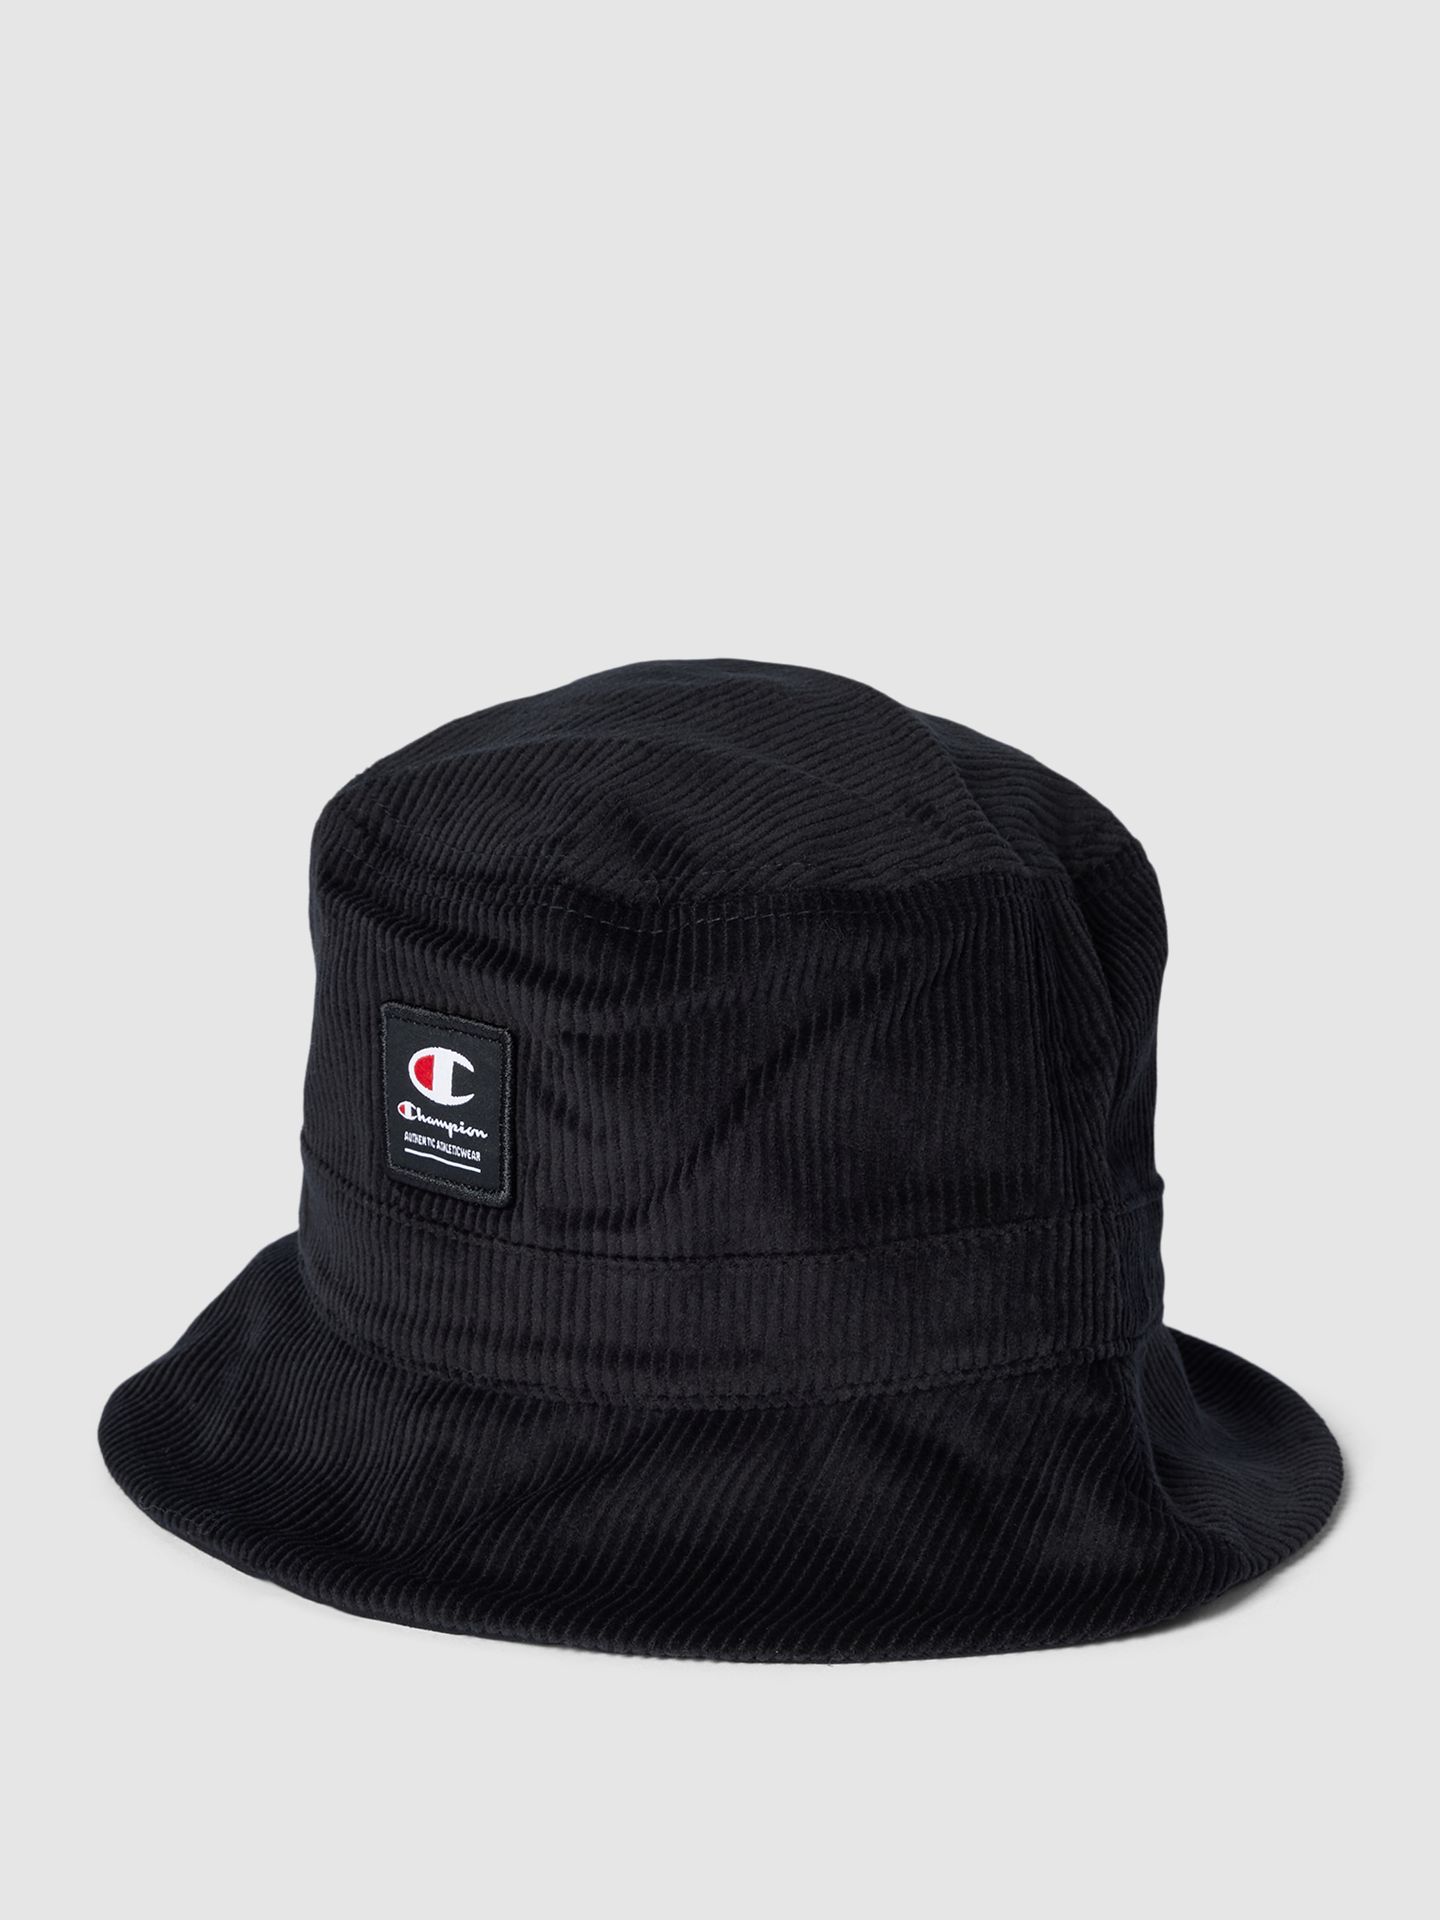 Czapka typu bucket hat z detalami z logo